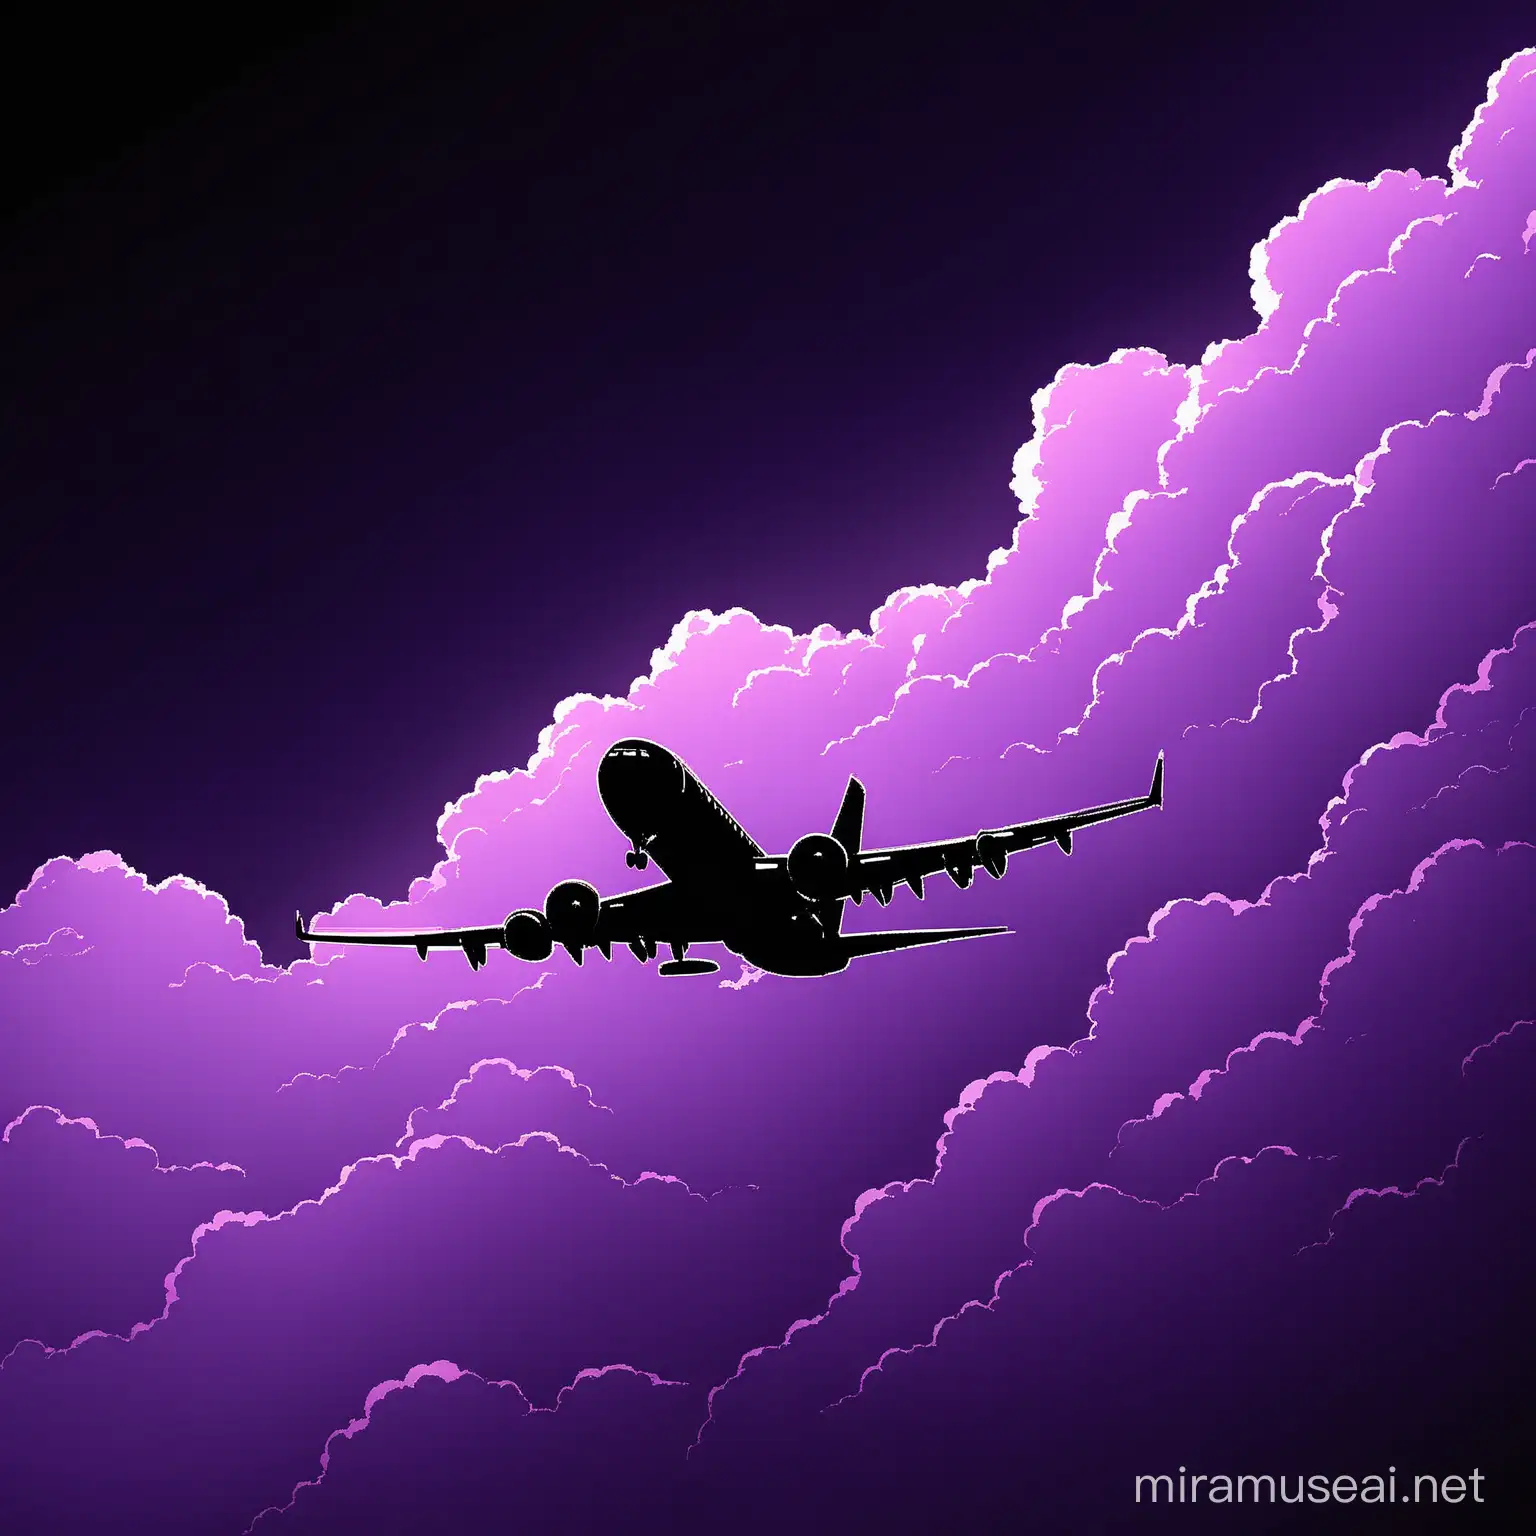 Flugzeug, Aufnahme, Lila Wolken, dunkel, Schatten, Schwarzer Hintergrund